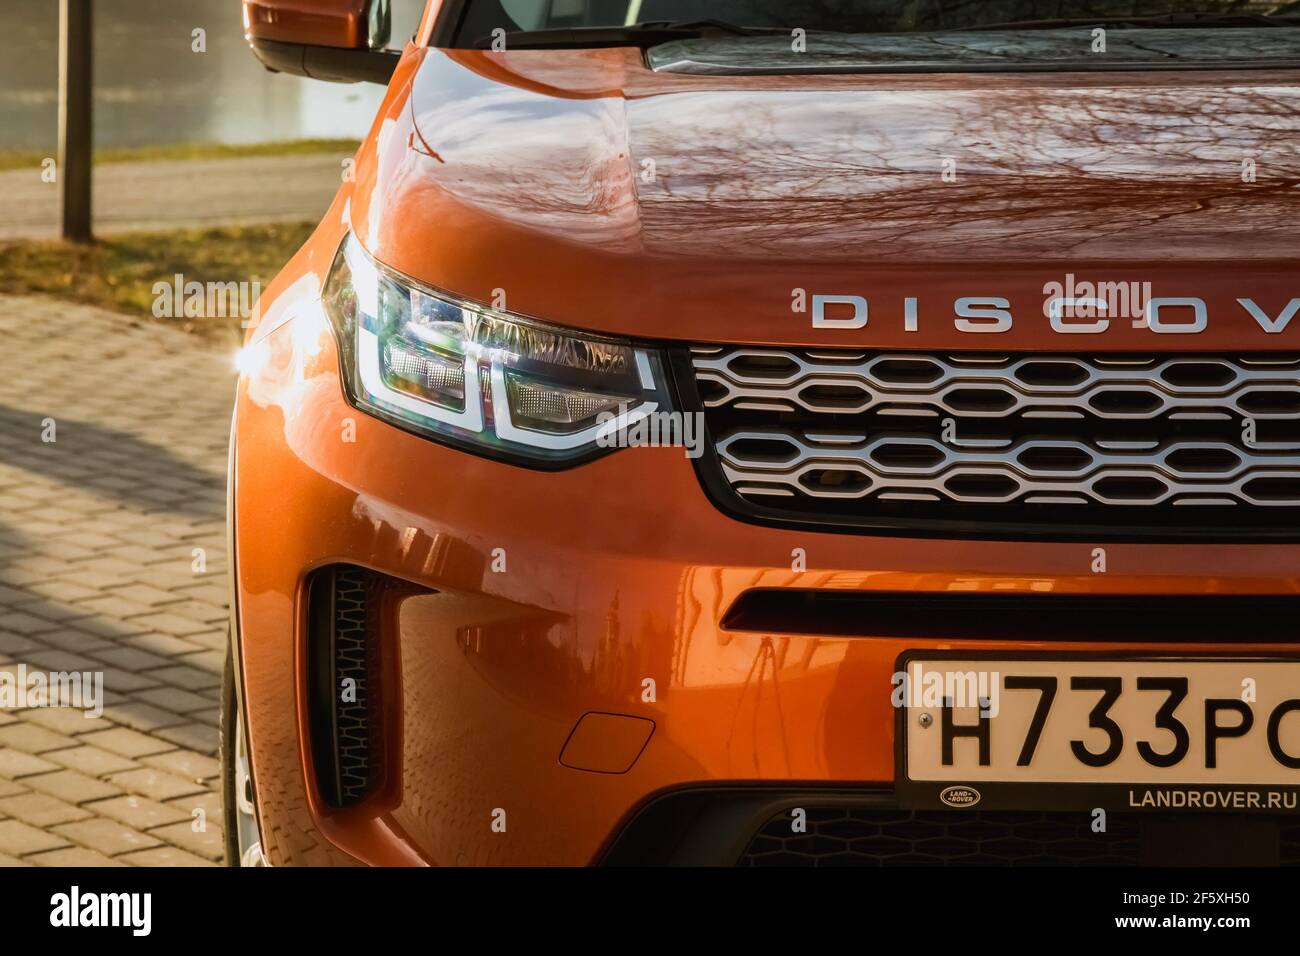 Moskau, Russland - 20. Dezember 2019: Der neue Land Rover Discovery Sport 2019 steht auf dem Park. Nahaufnahme der Vorderansicht. Scheinwerfer, Stoßfänger und Haube von orange suv.. Stockfoto